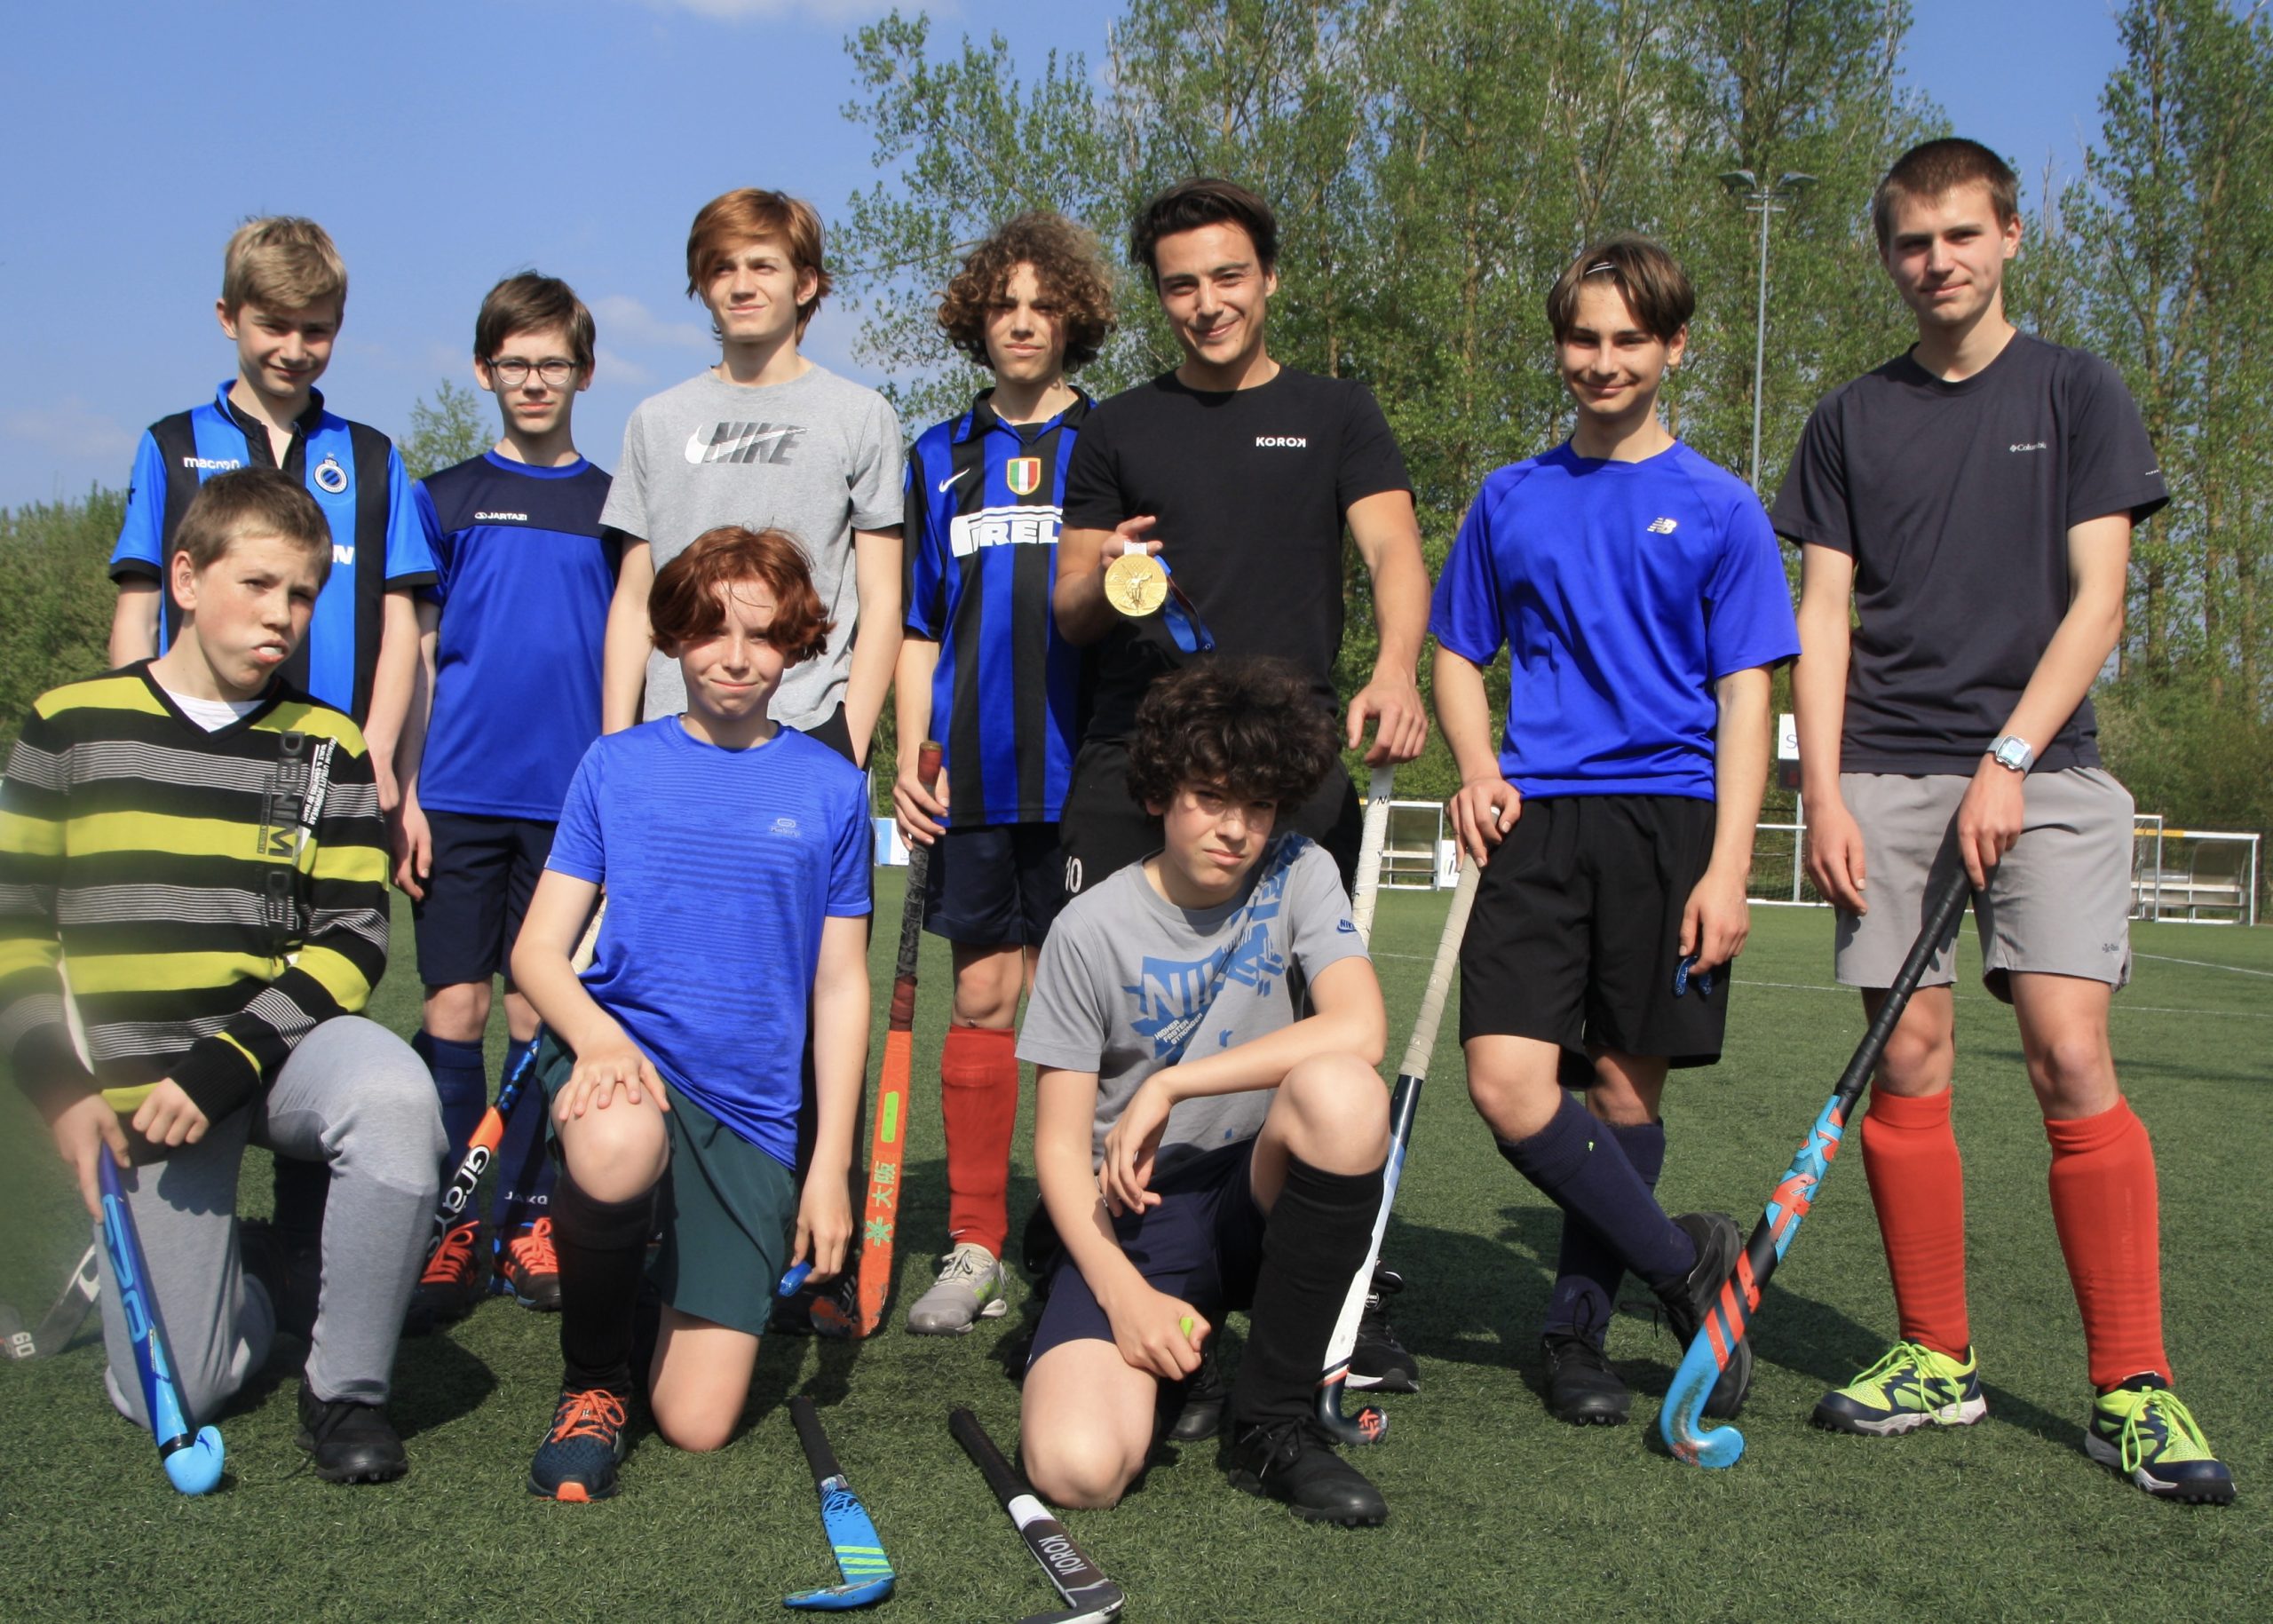 De U16 boys van Hockey Rotselaar zoeken ploegmaats om in competitie te kunnen treden!